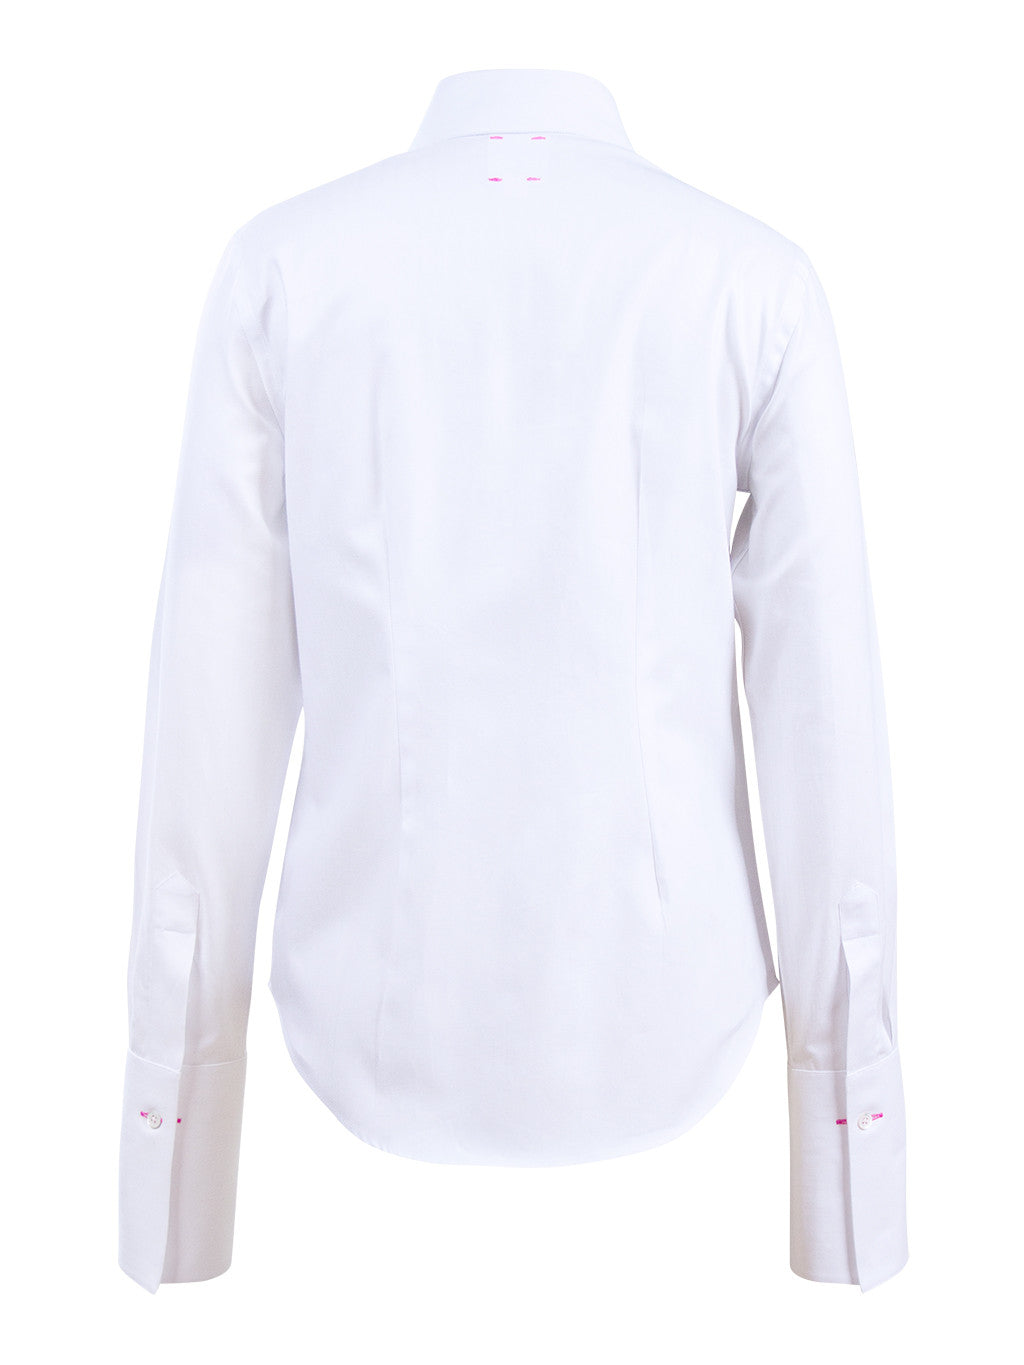 Newport Mini Twill Shirt - White Pink Tartan